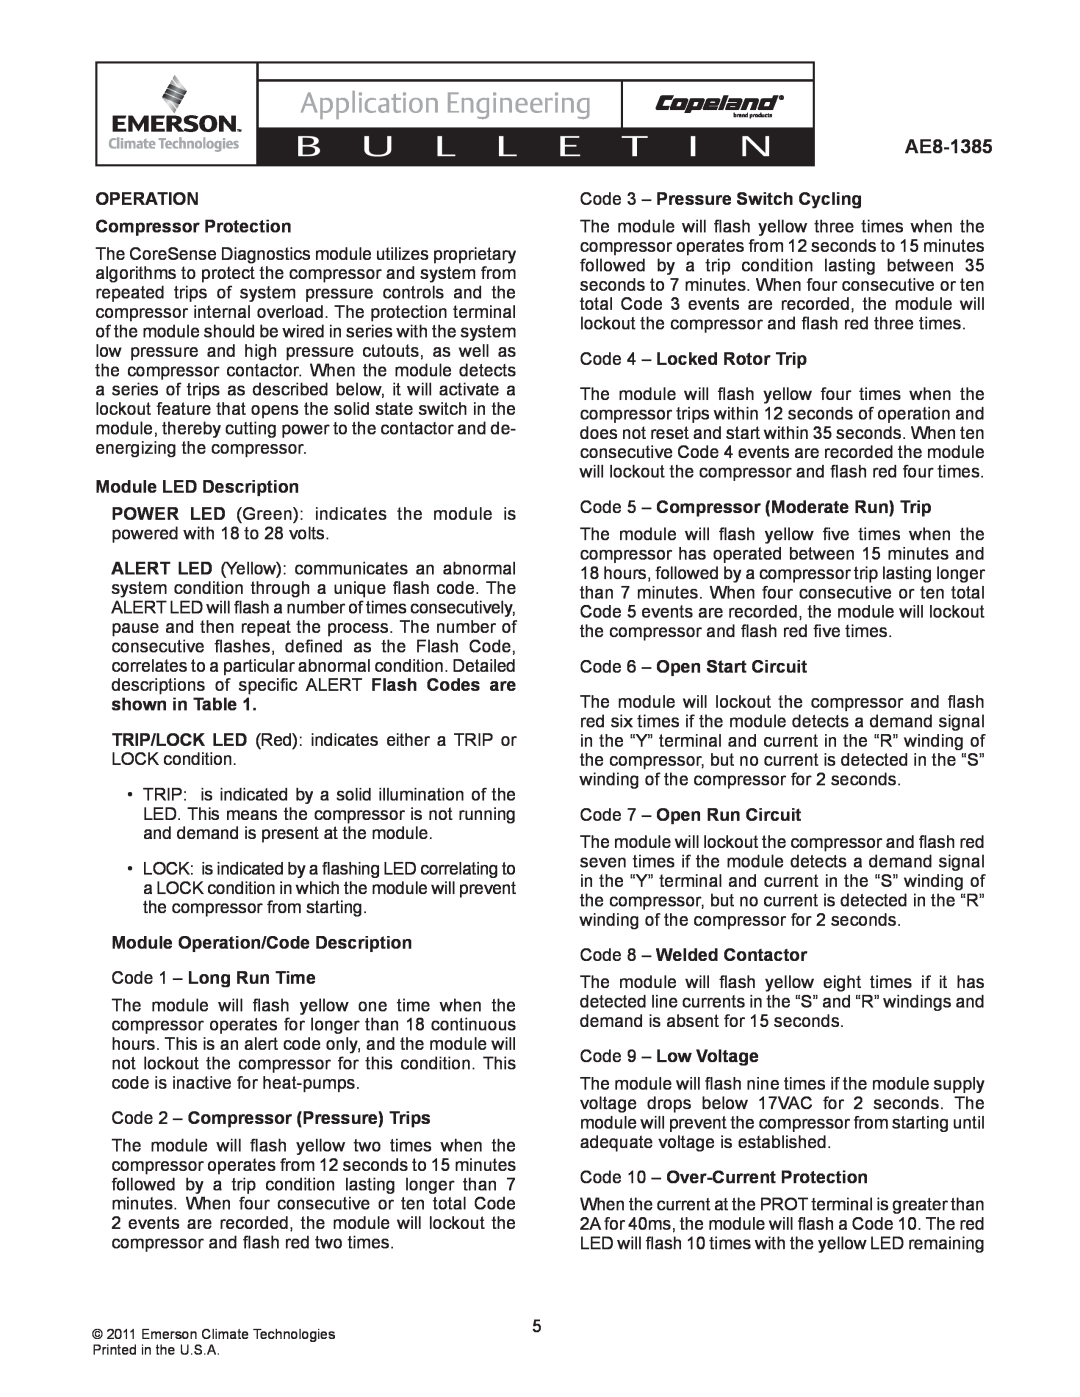 Emerson AE8-1385 OPERATION Compressor Protection, Module LED Description, Module Operation/Code Description, B U L L E 